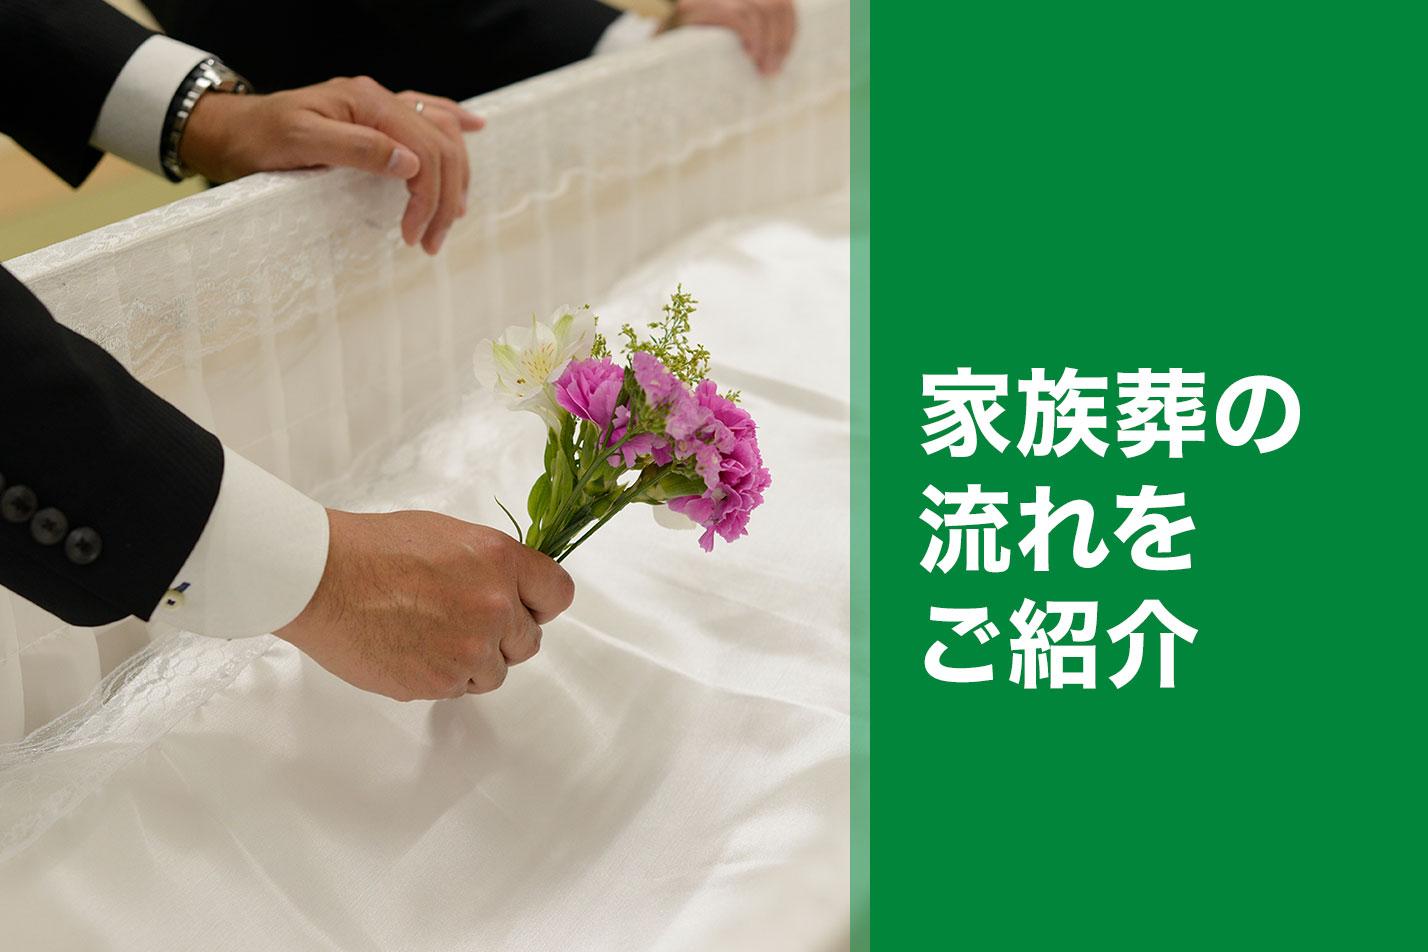  国分寺市における家族葬の流れとは？のイメージ画像